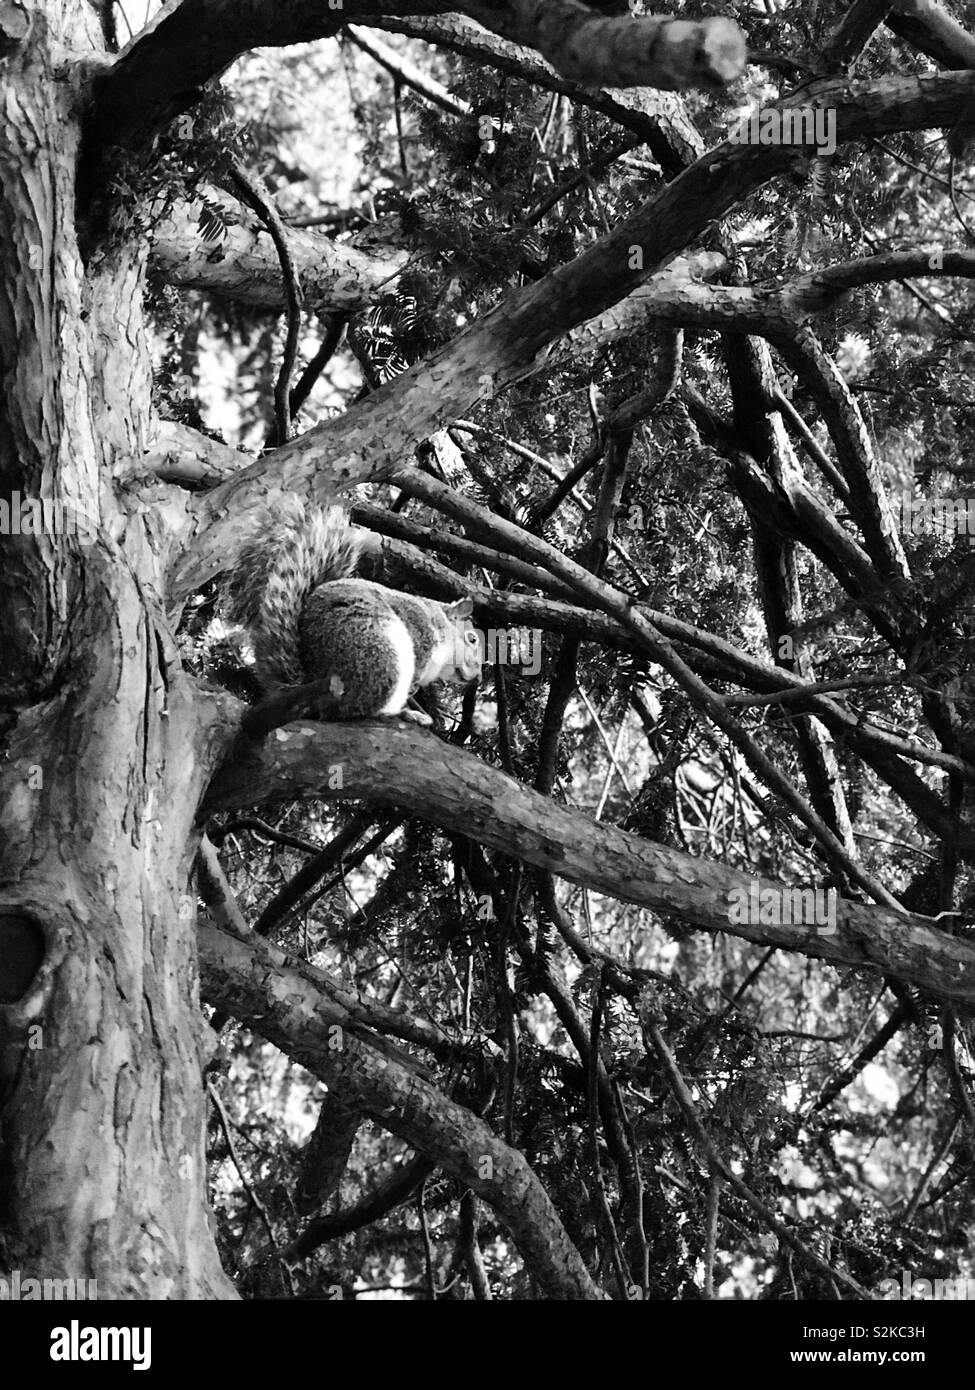 Eichhörnchen im Baum Stockfoto